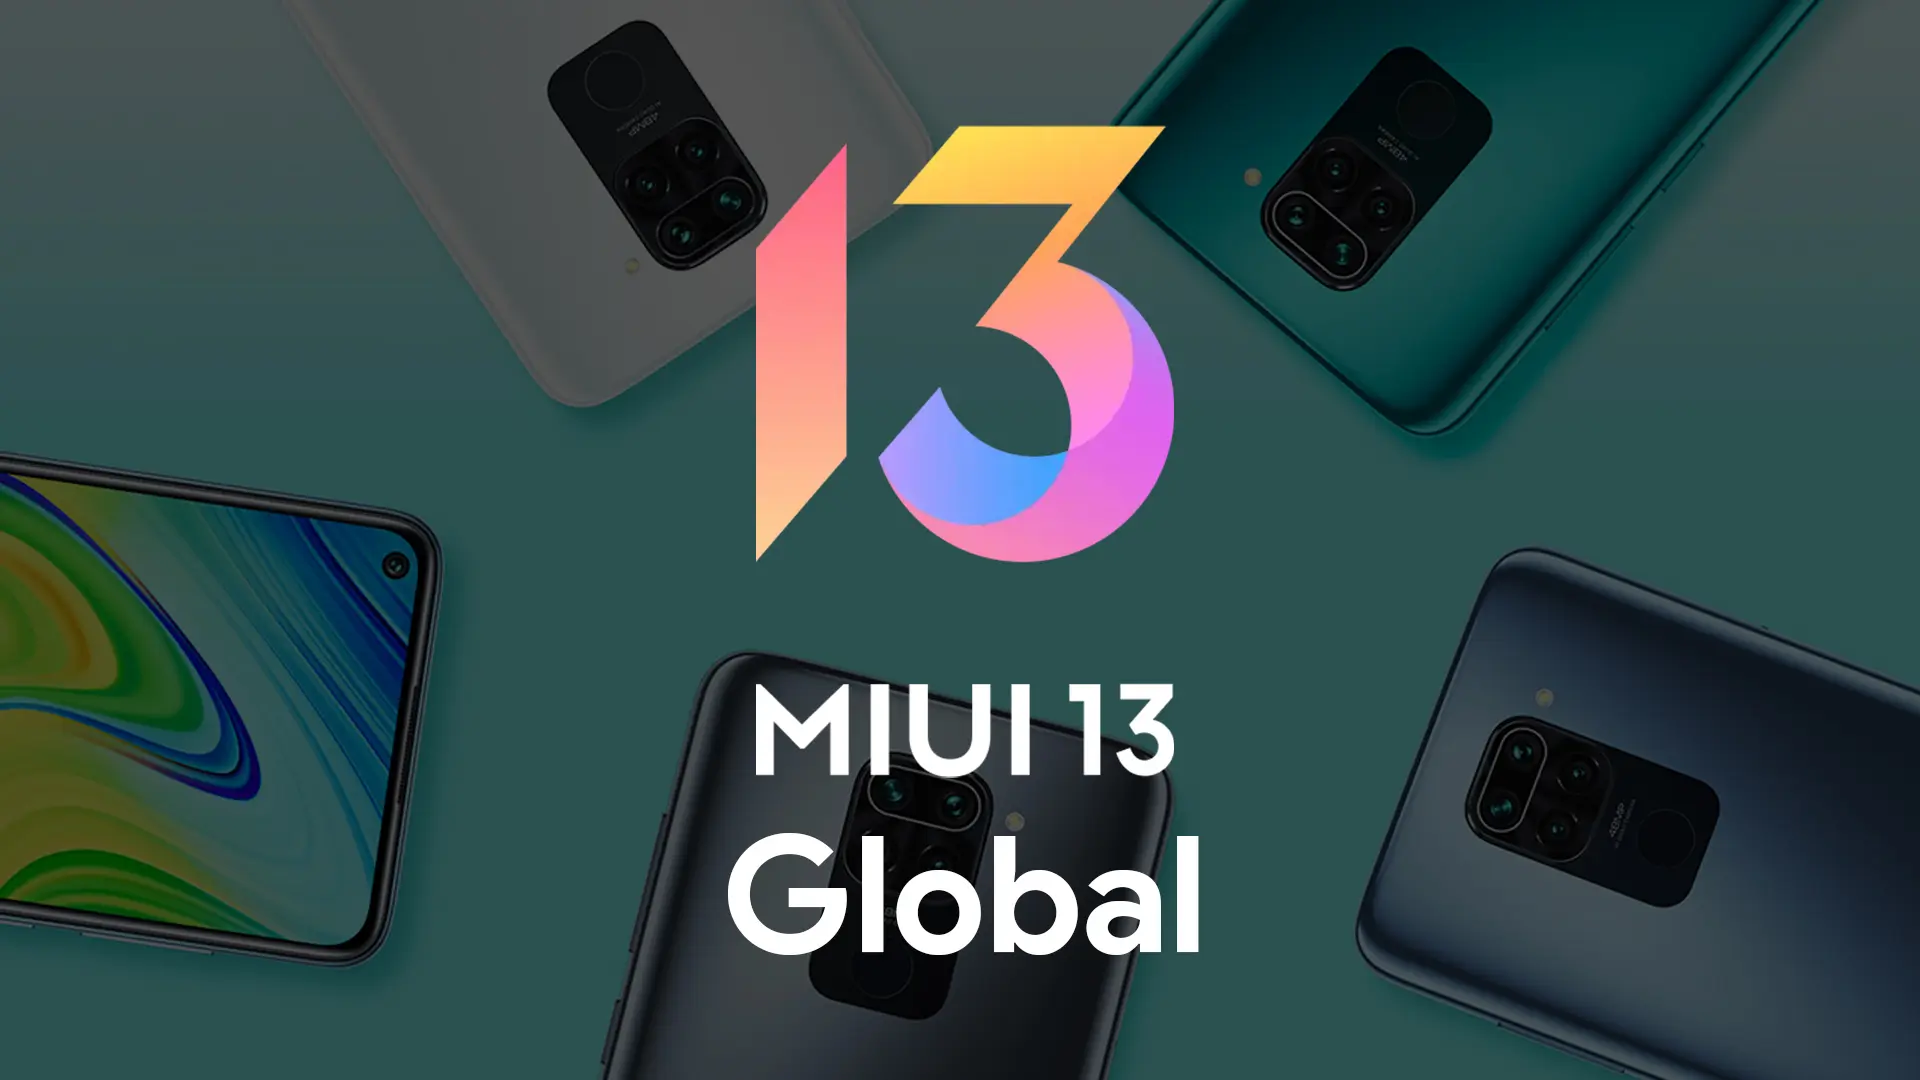 Altri tre smartphone Xiaomi economici hanno ricevuto il firmware globale MIUI 13 su Android 12